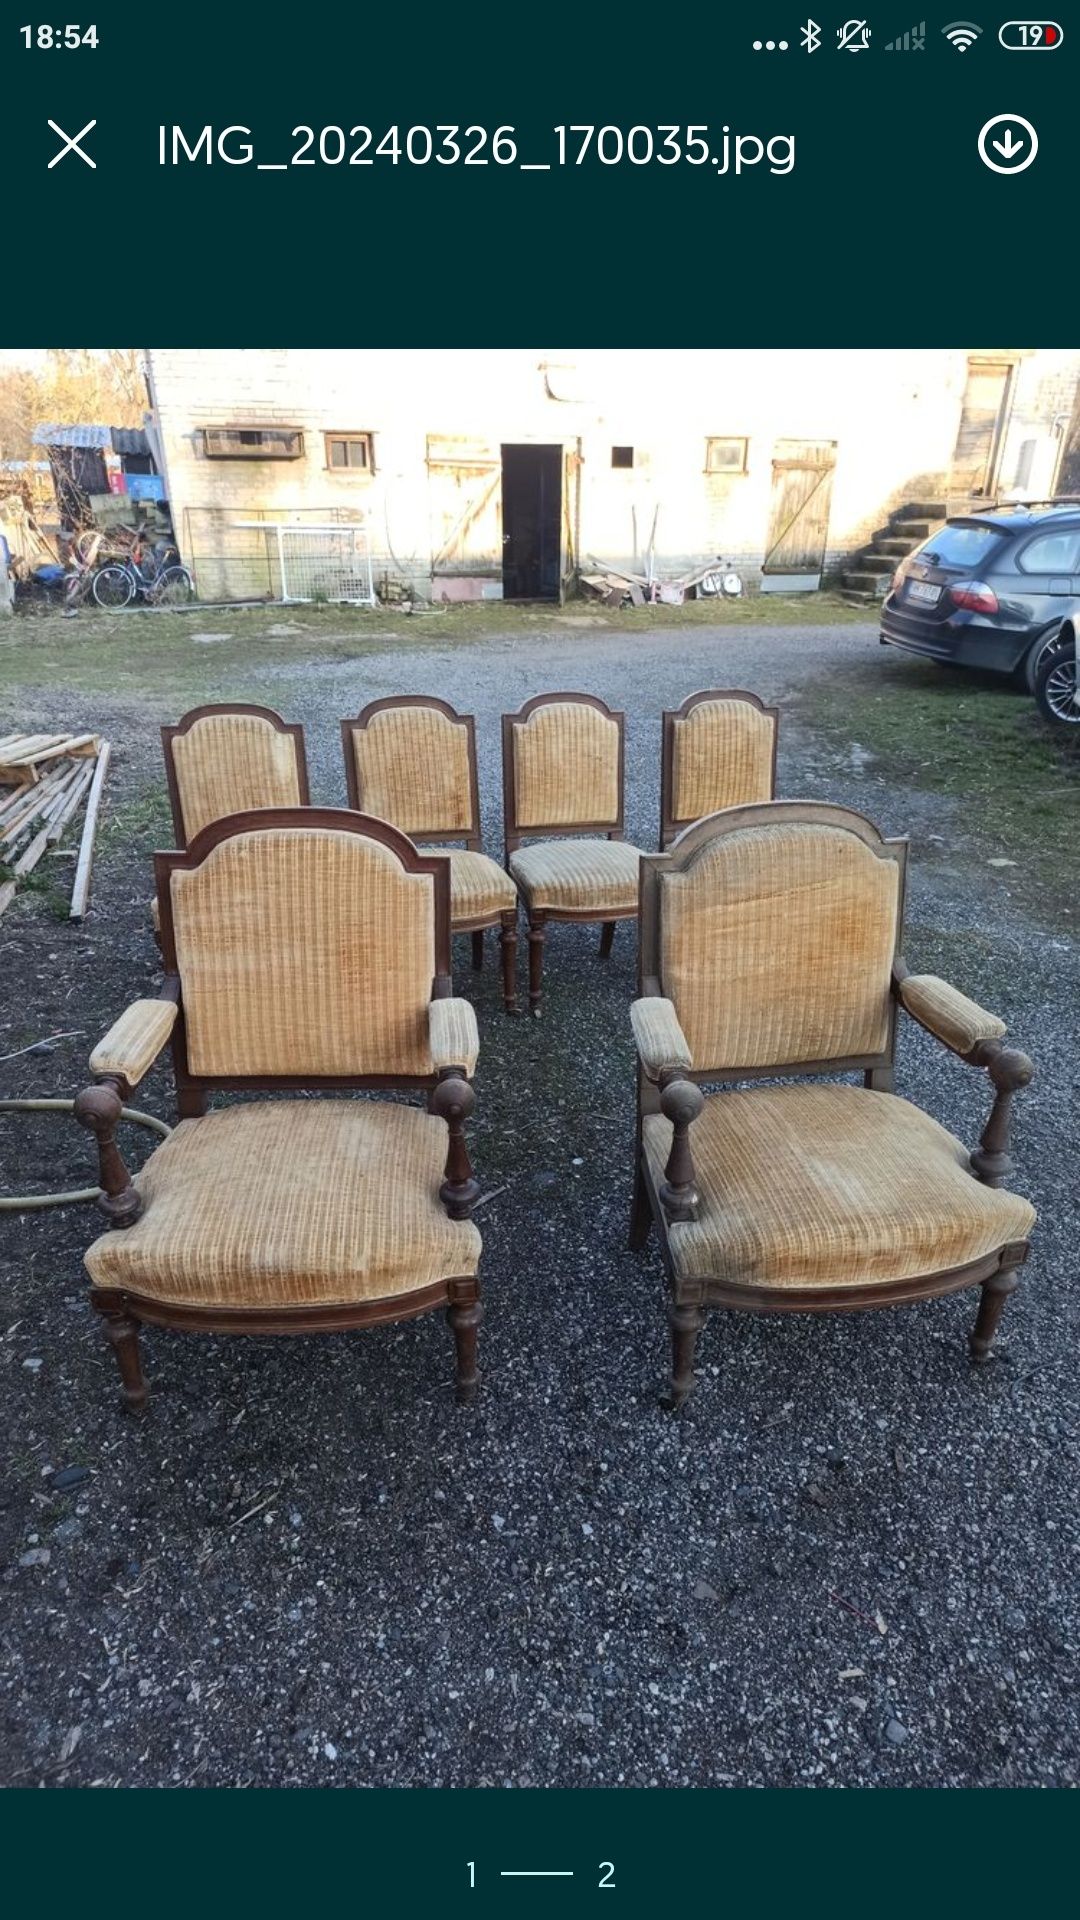 Stare polskie fotele